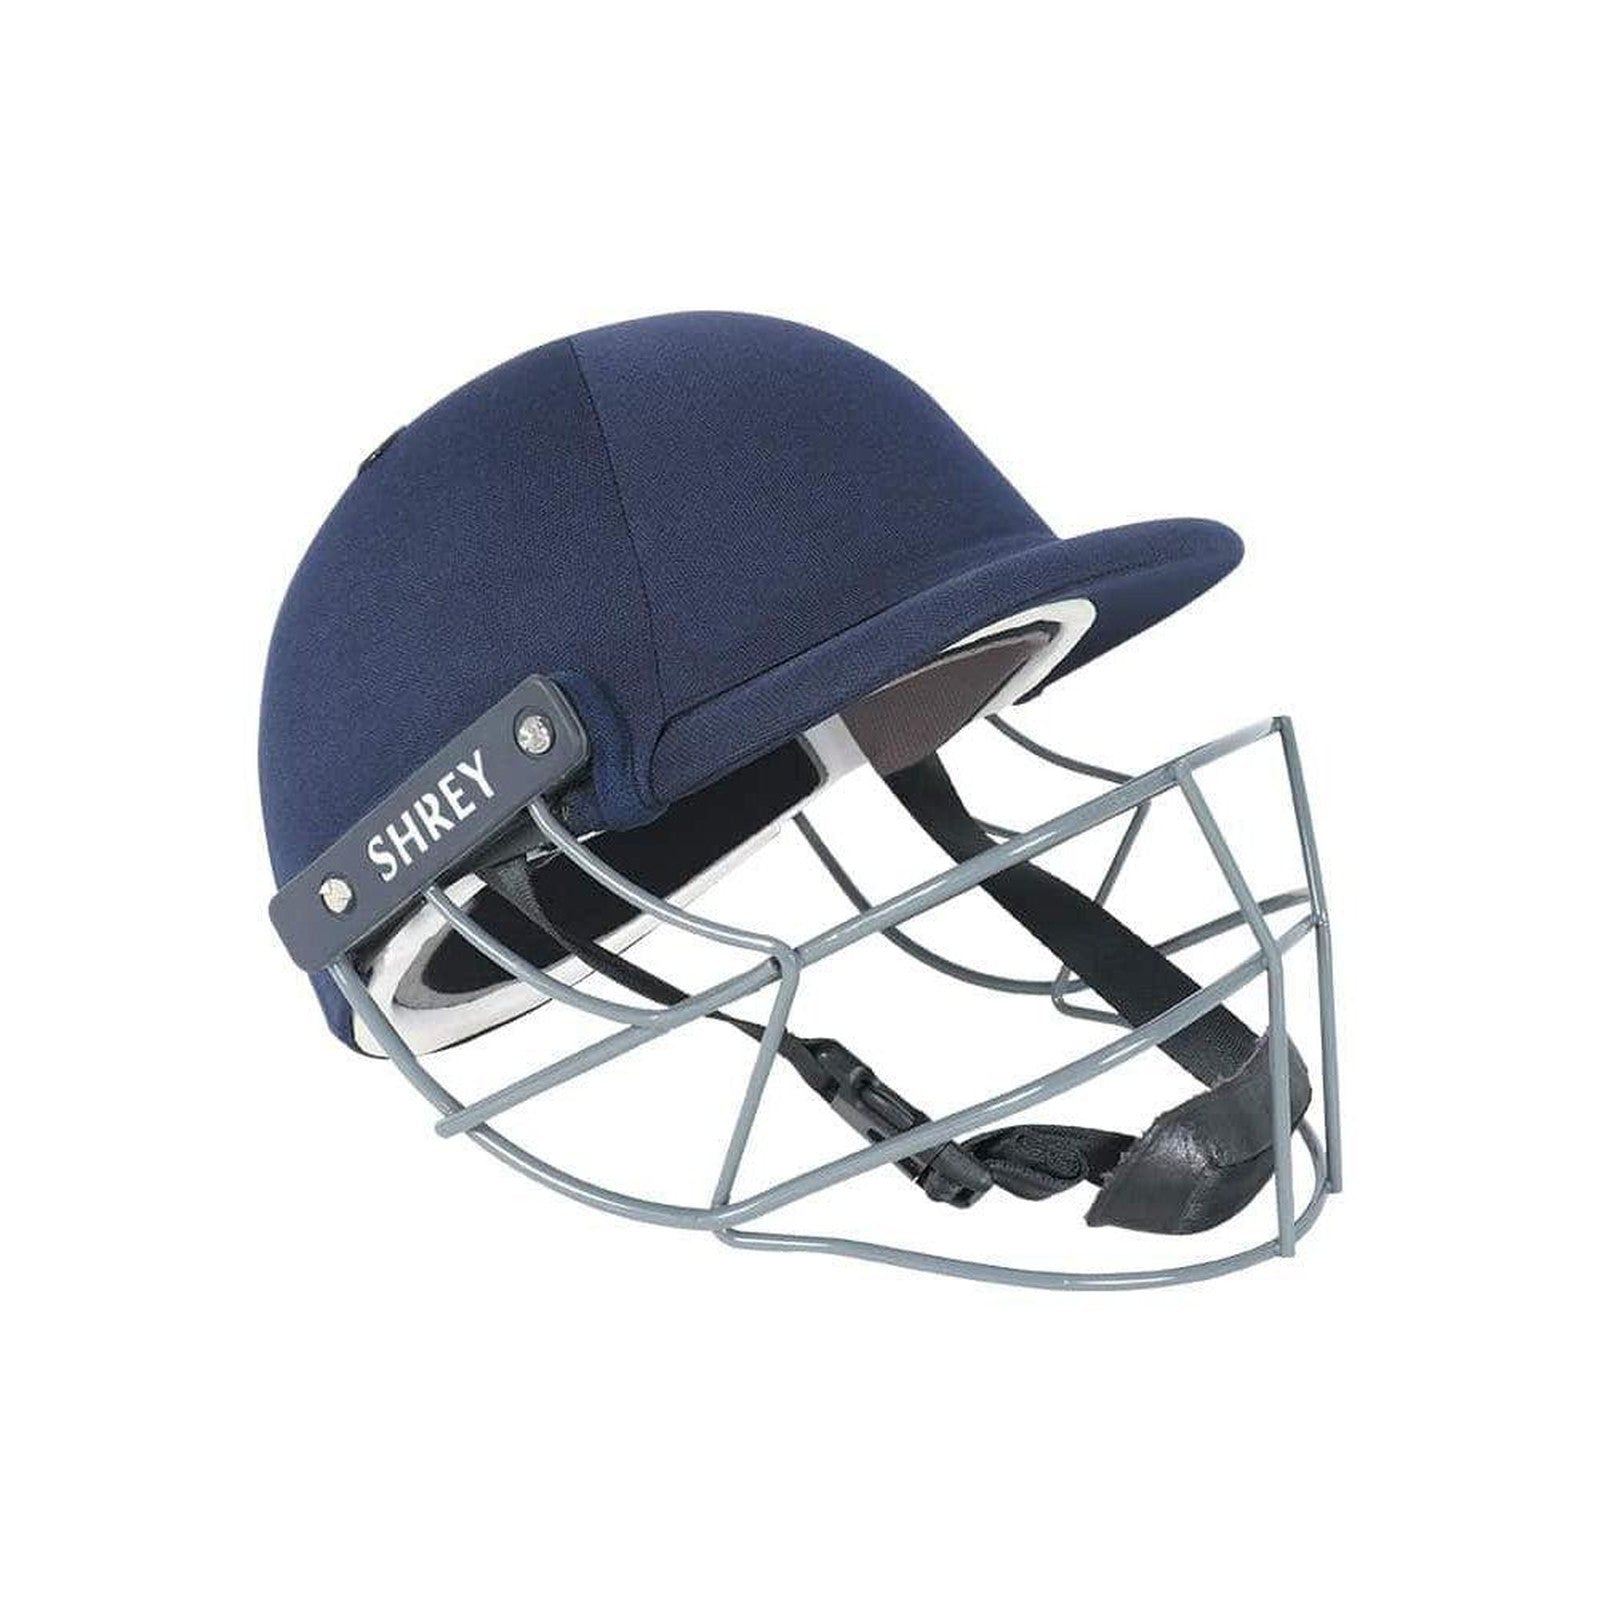 Shrey Performance 2.0 Cricket Helmet With Mild Steel - Navy Junior